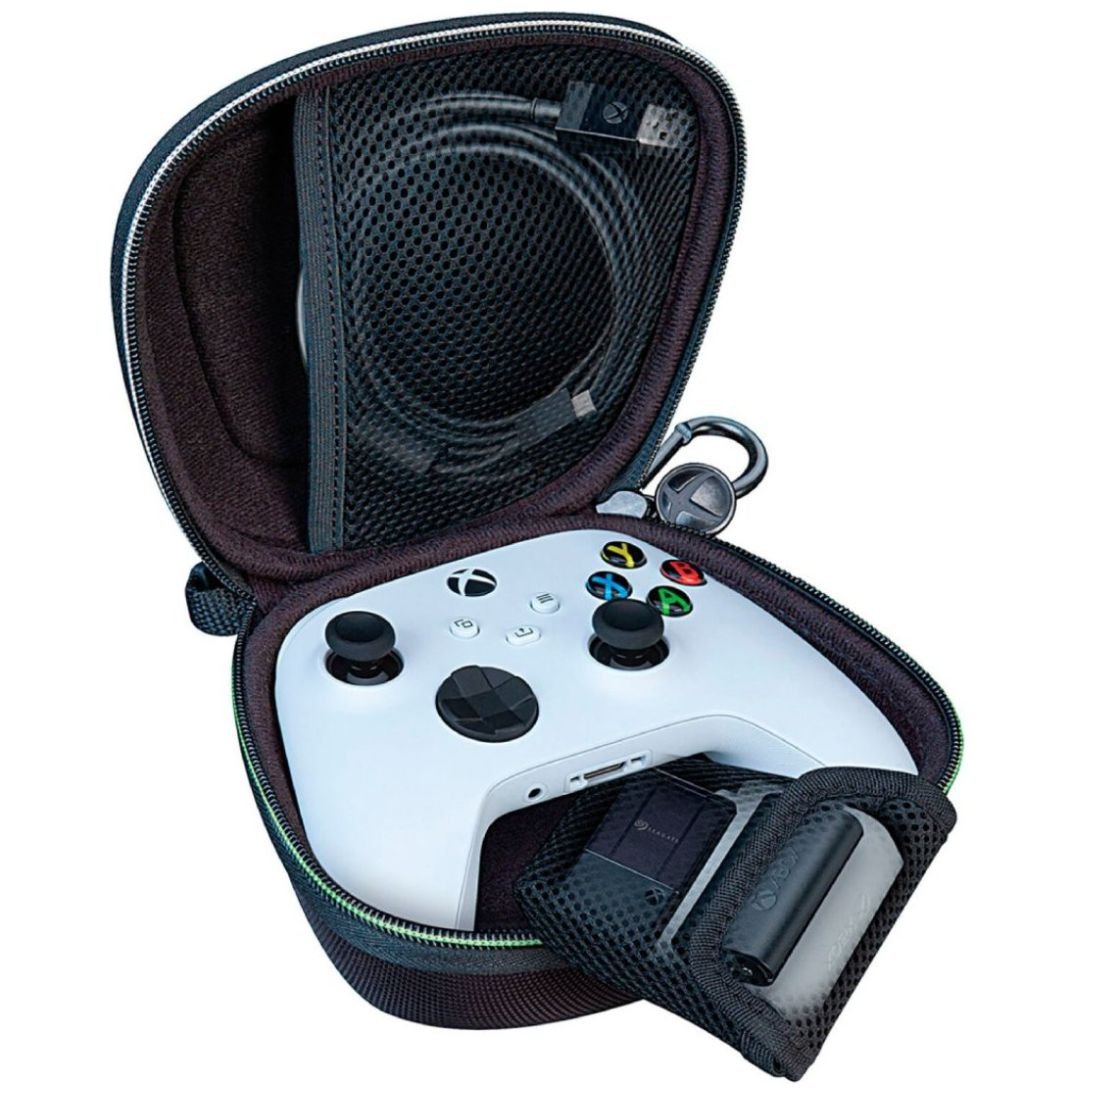  ZENACCE Estuche rígido de transporte compatible con Xbox Series  X, bolsa protectora de viaje para consola Xbox Series X, controladores  inalámbricos, cables y otros accesorios : Videojuegos